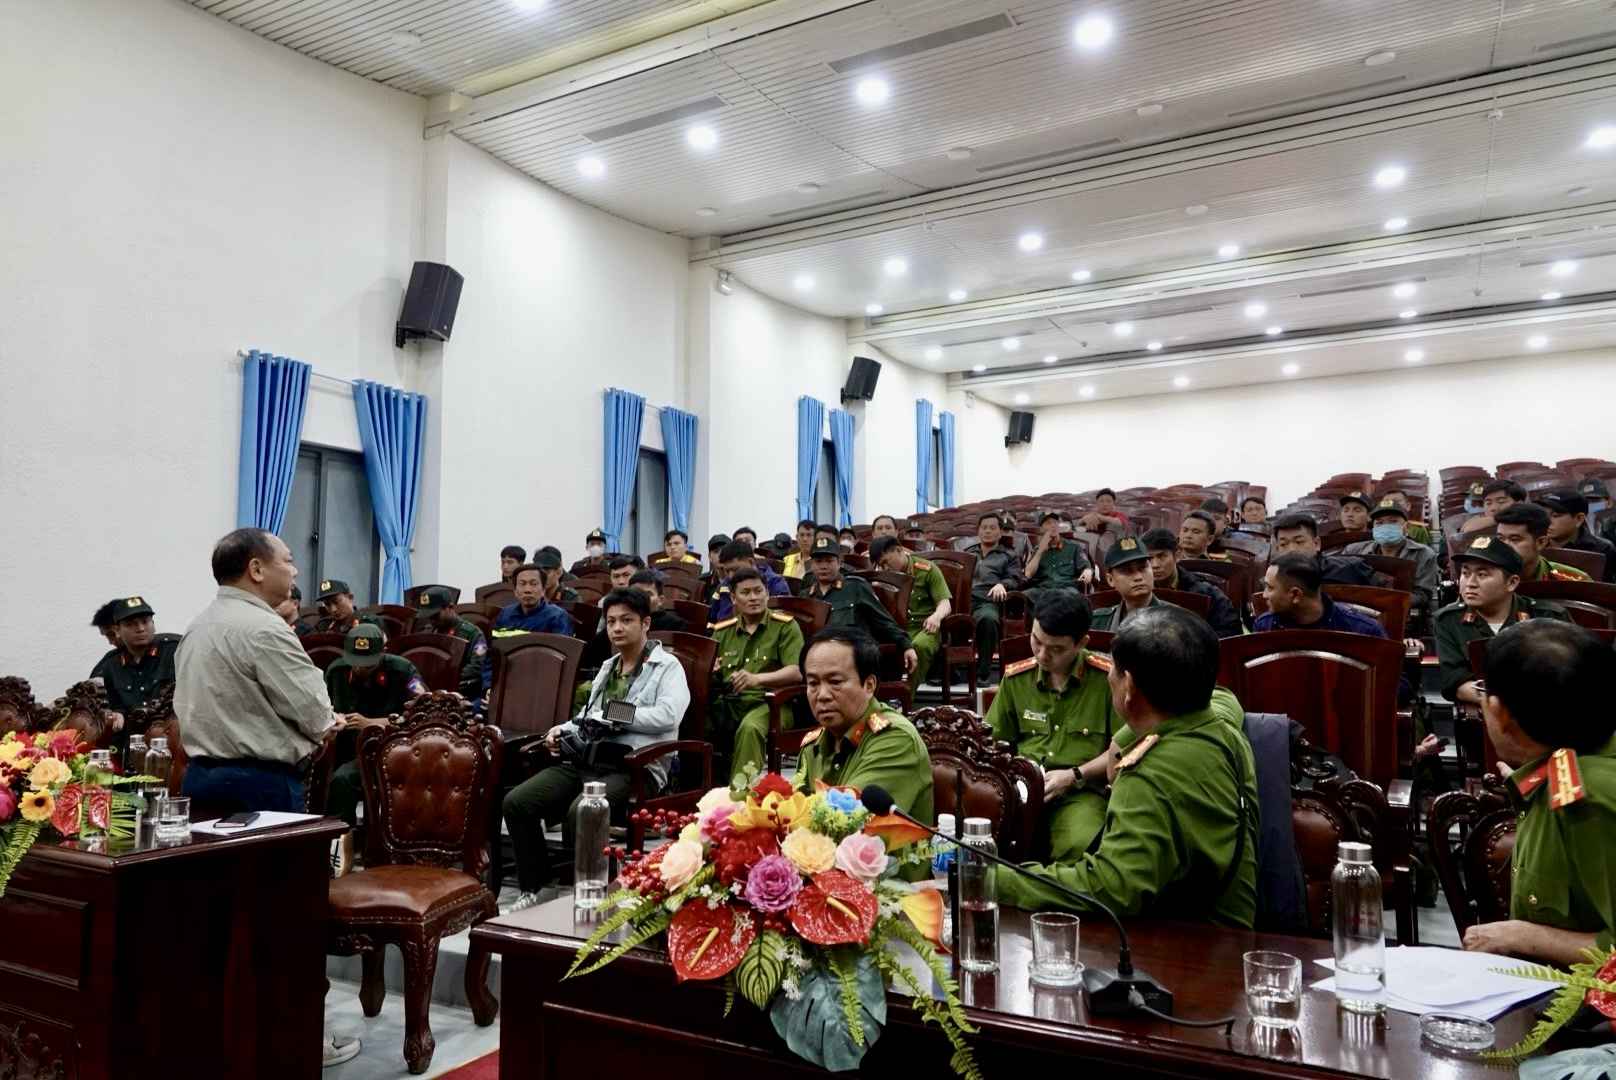 Đại tá Lê Quang Nhân - Giám đốc Công an tỉnh Bình Thuận đang đứng chỉ đạo các lực lượng trong Ban chuyên án. Ảnh: Phạm Duy